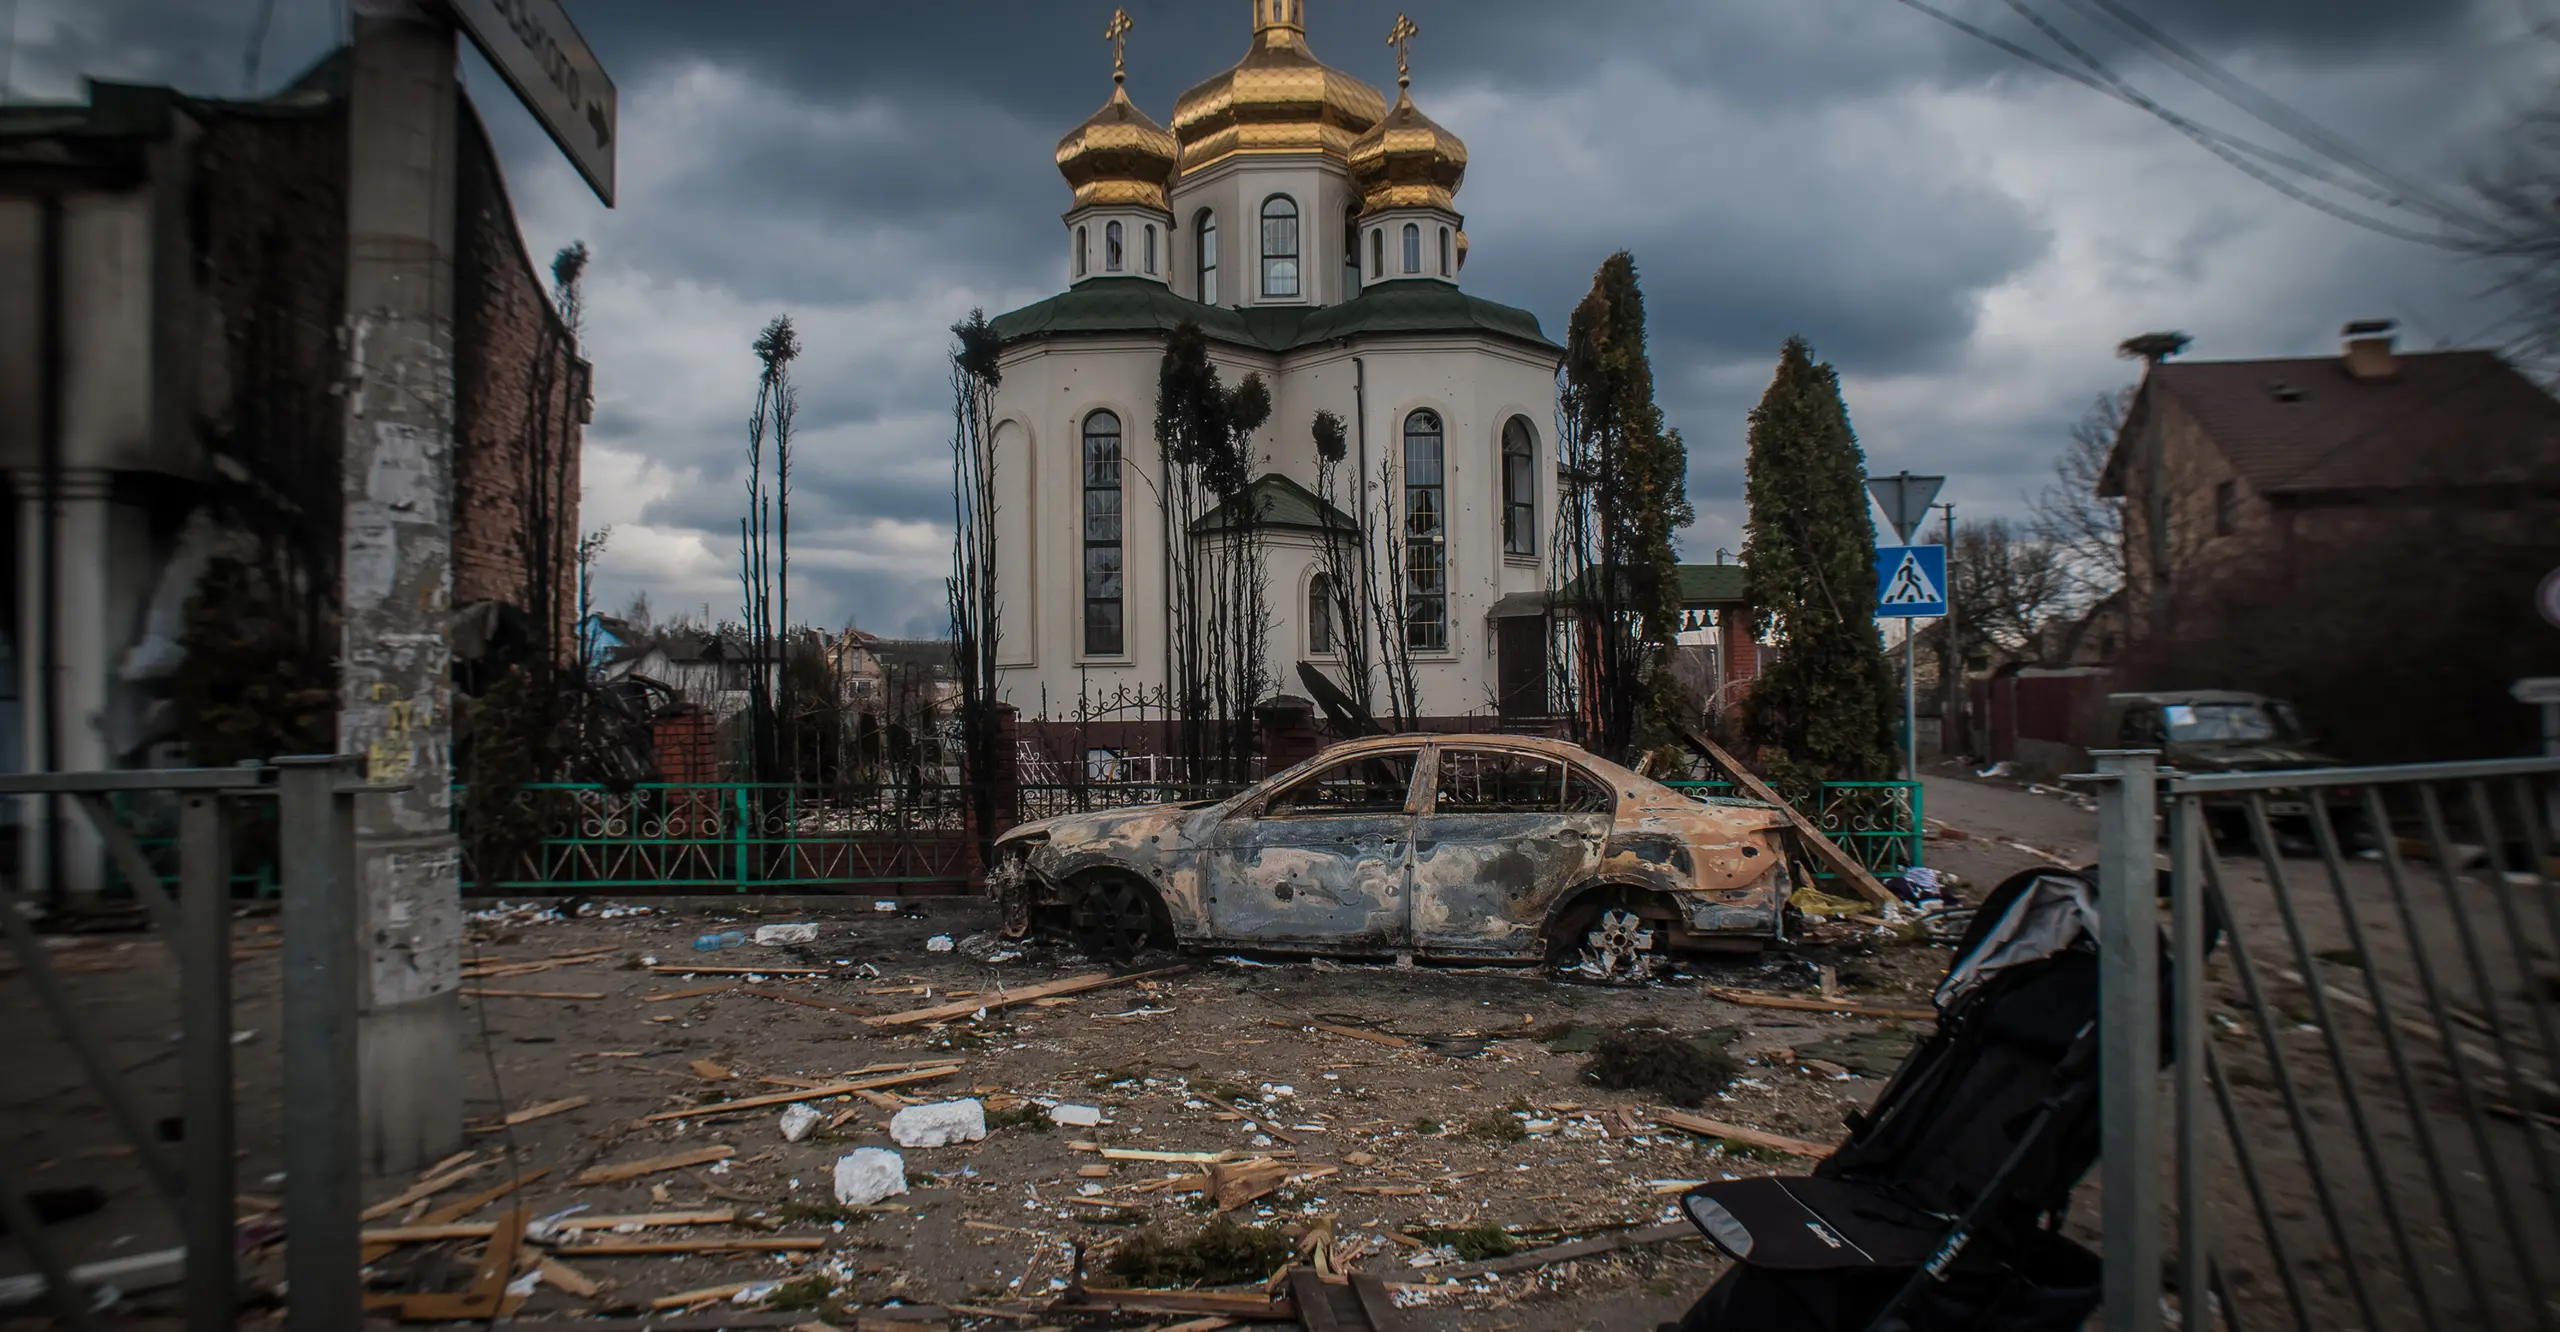 Image of bombed Ukrainian street